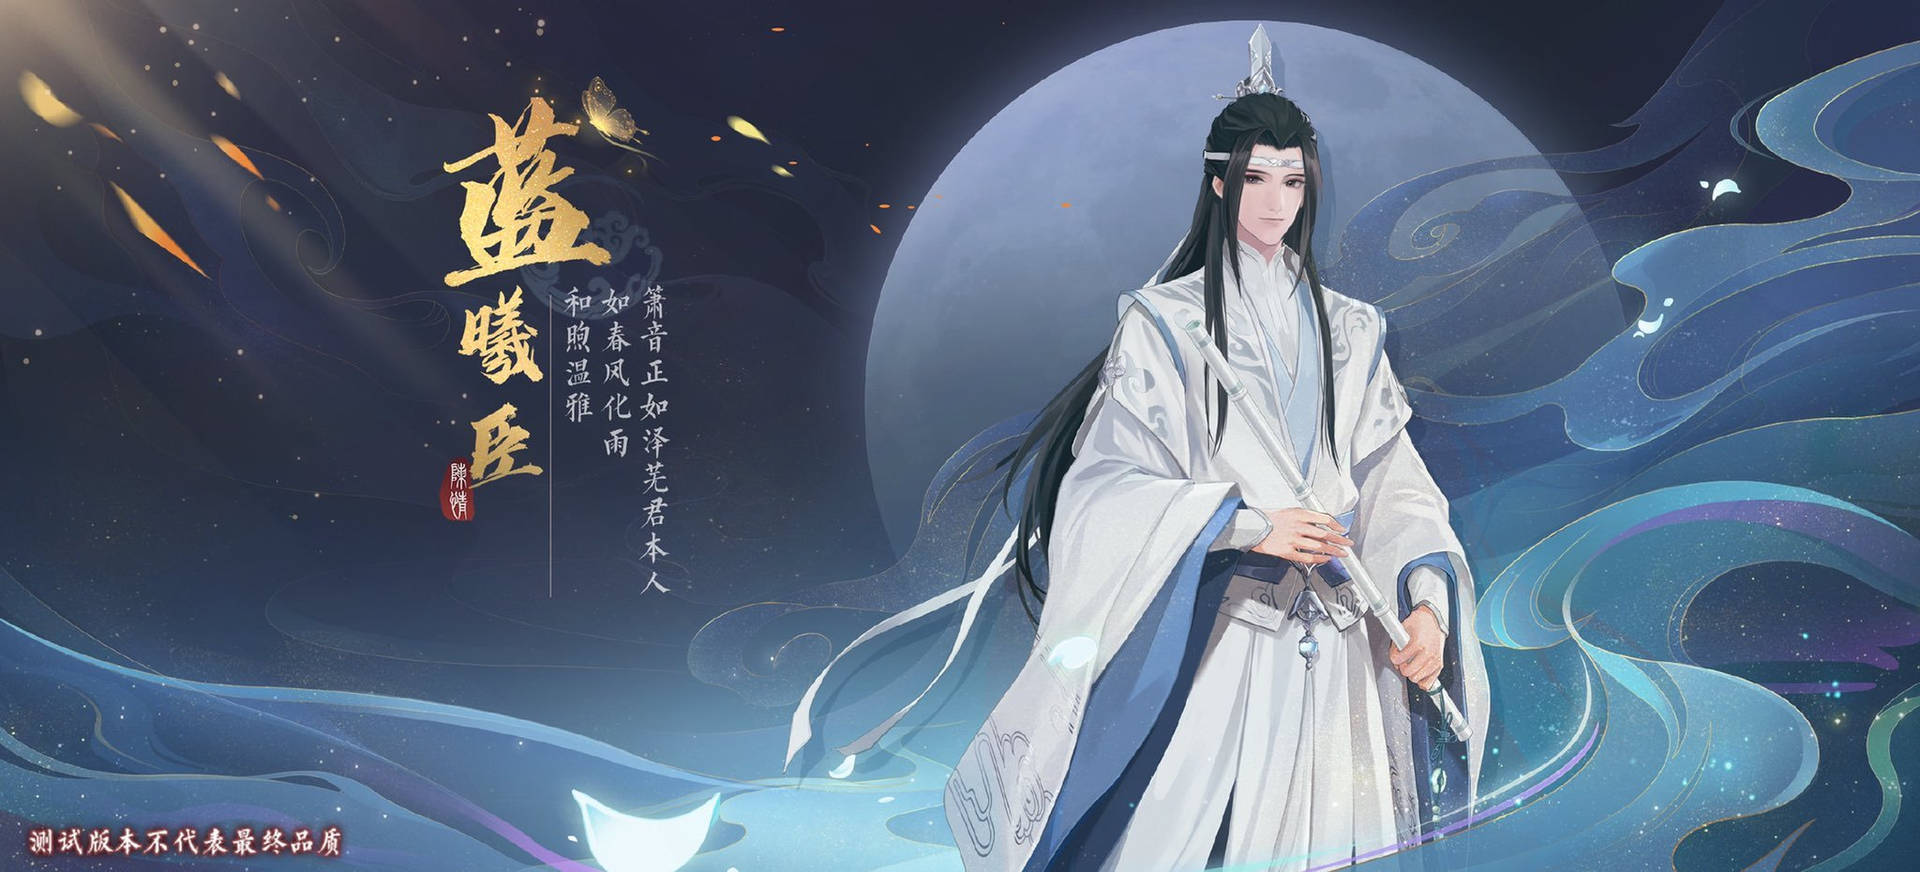 Mo Dao Zu Shi Lan Xichen Game Poster